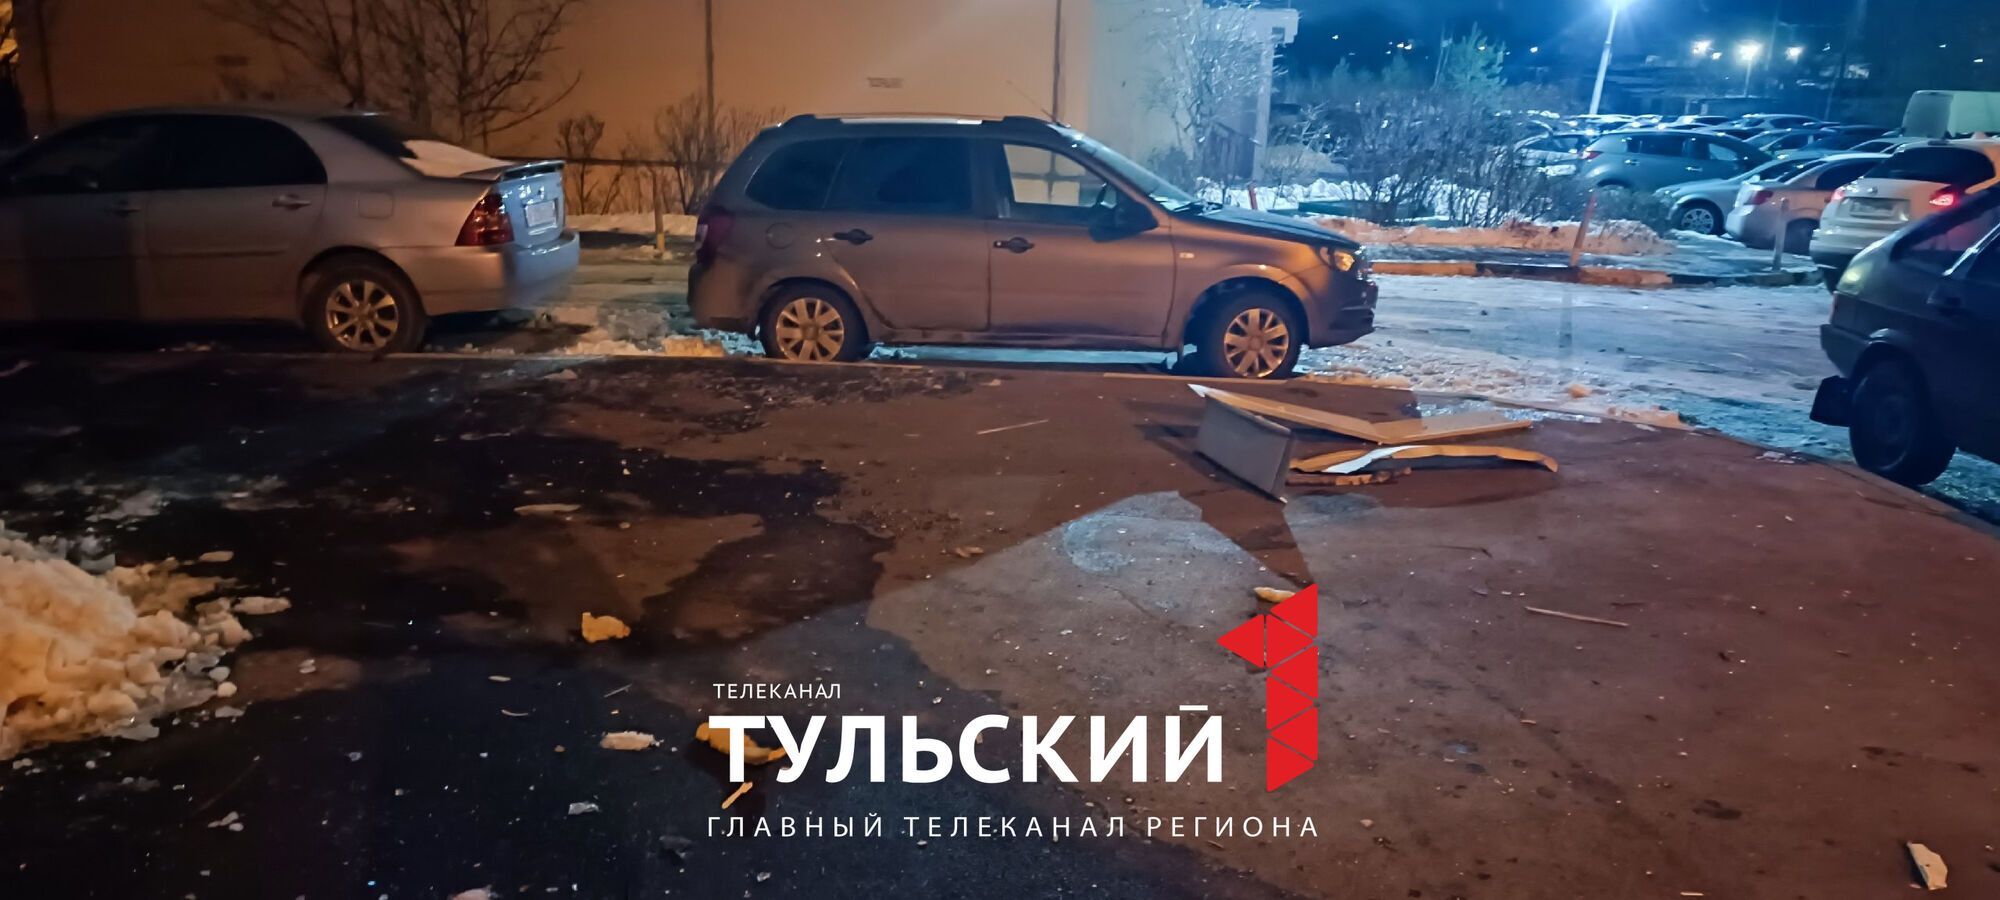 Масштабная атака дронов: в российской Туле раздались взрывы (фото и видео)